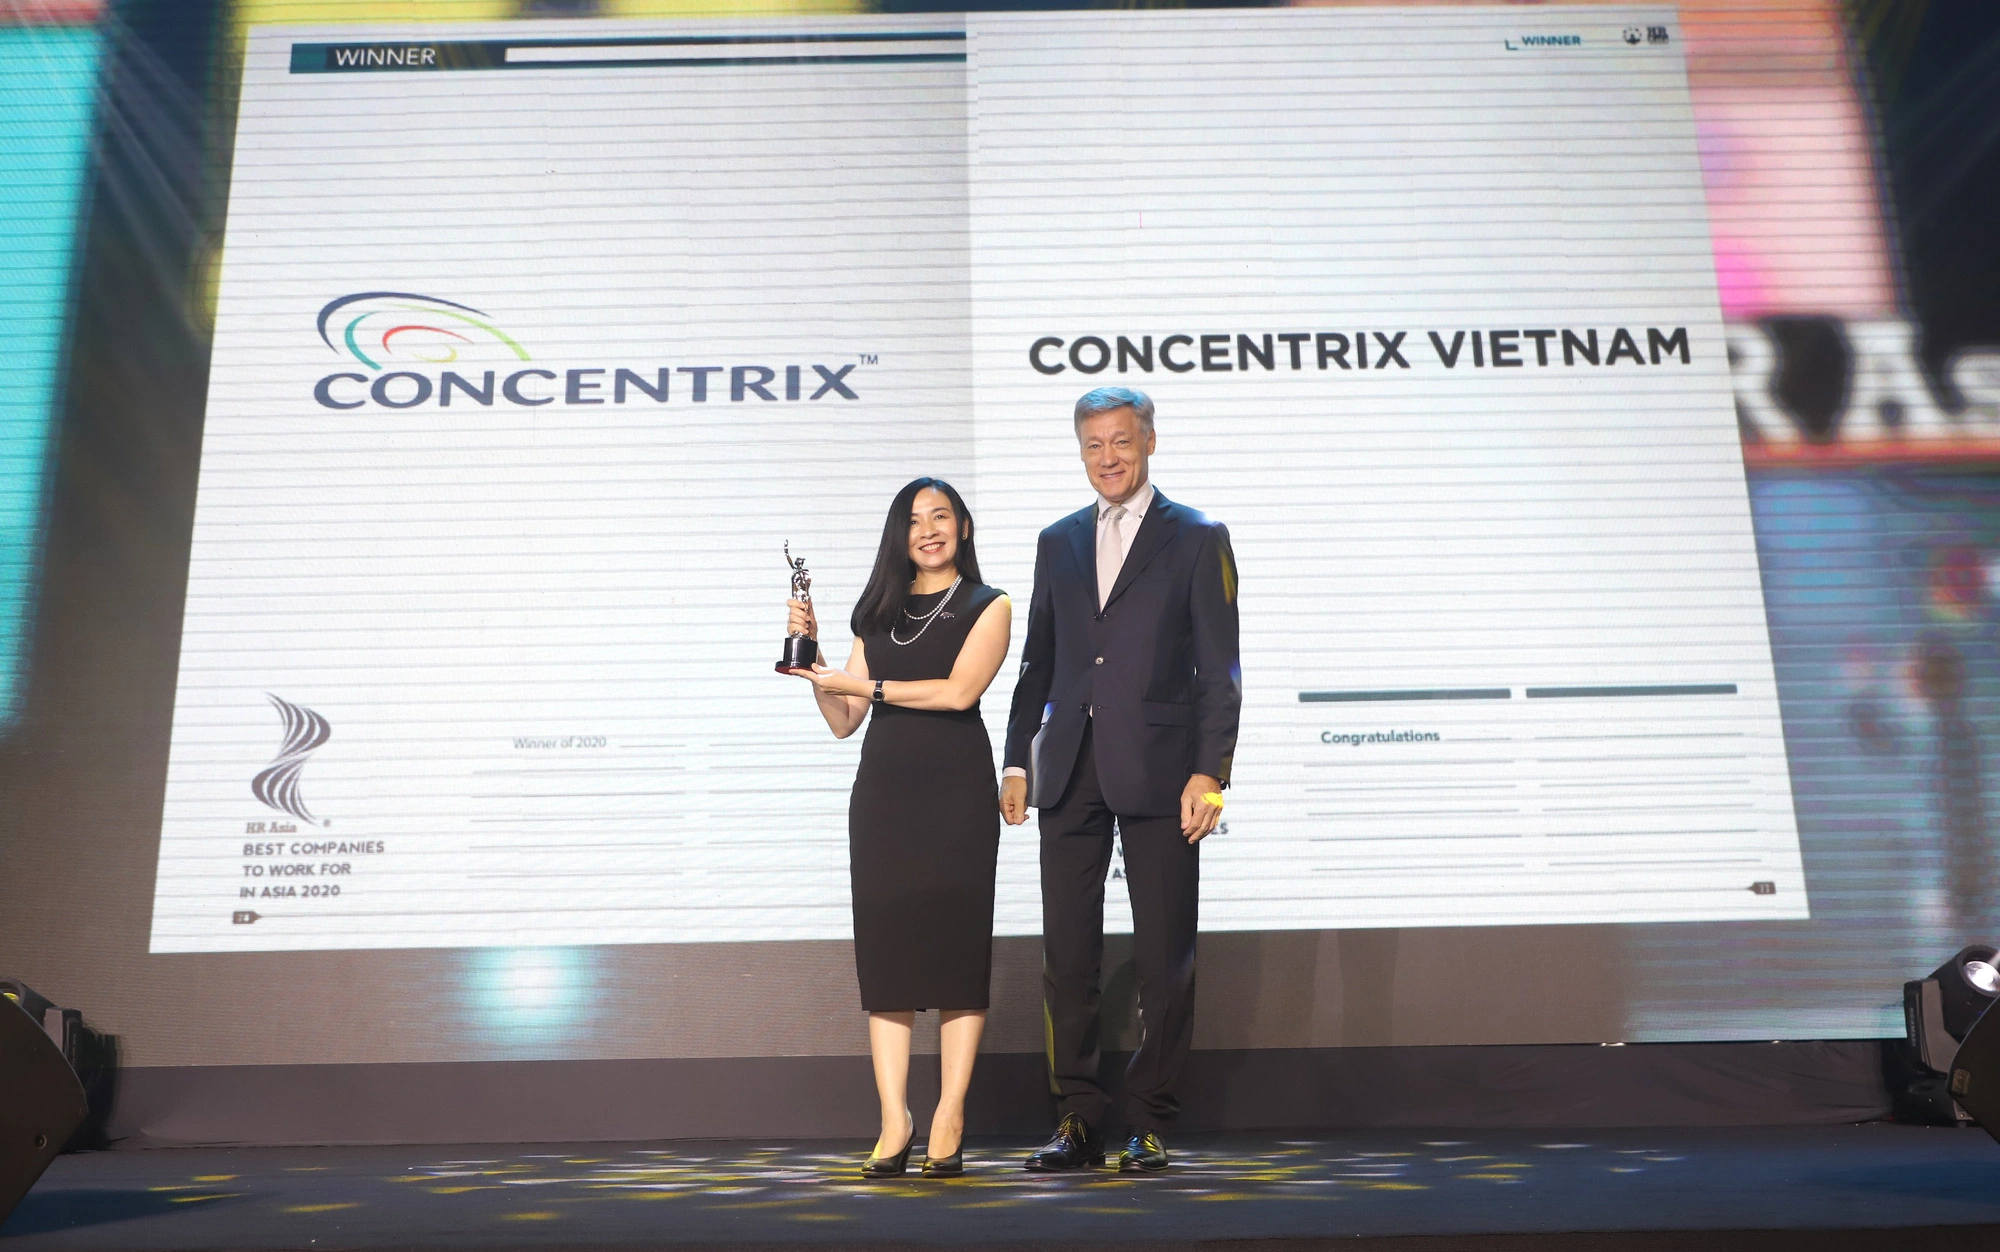 Concentrix Việt Nam chiến thắng giải thưởng "HR Asia - Nơi làm việc tốt nhất Châu Á năm 2020"